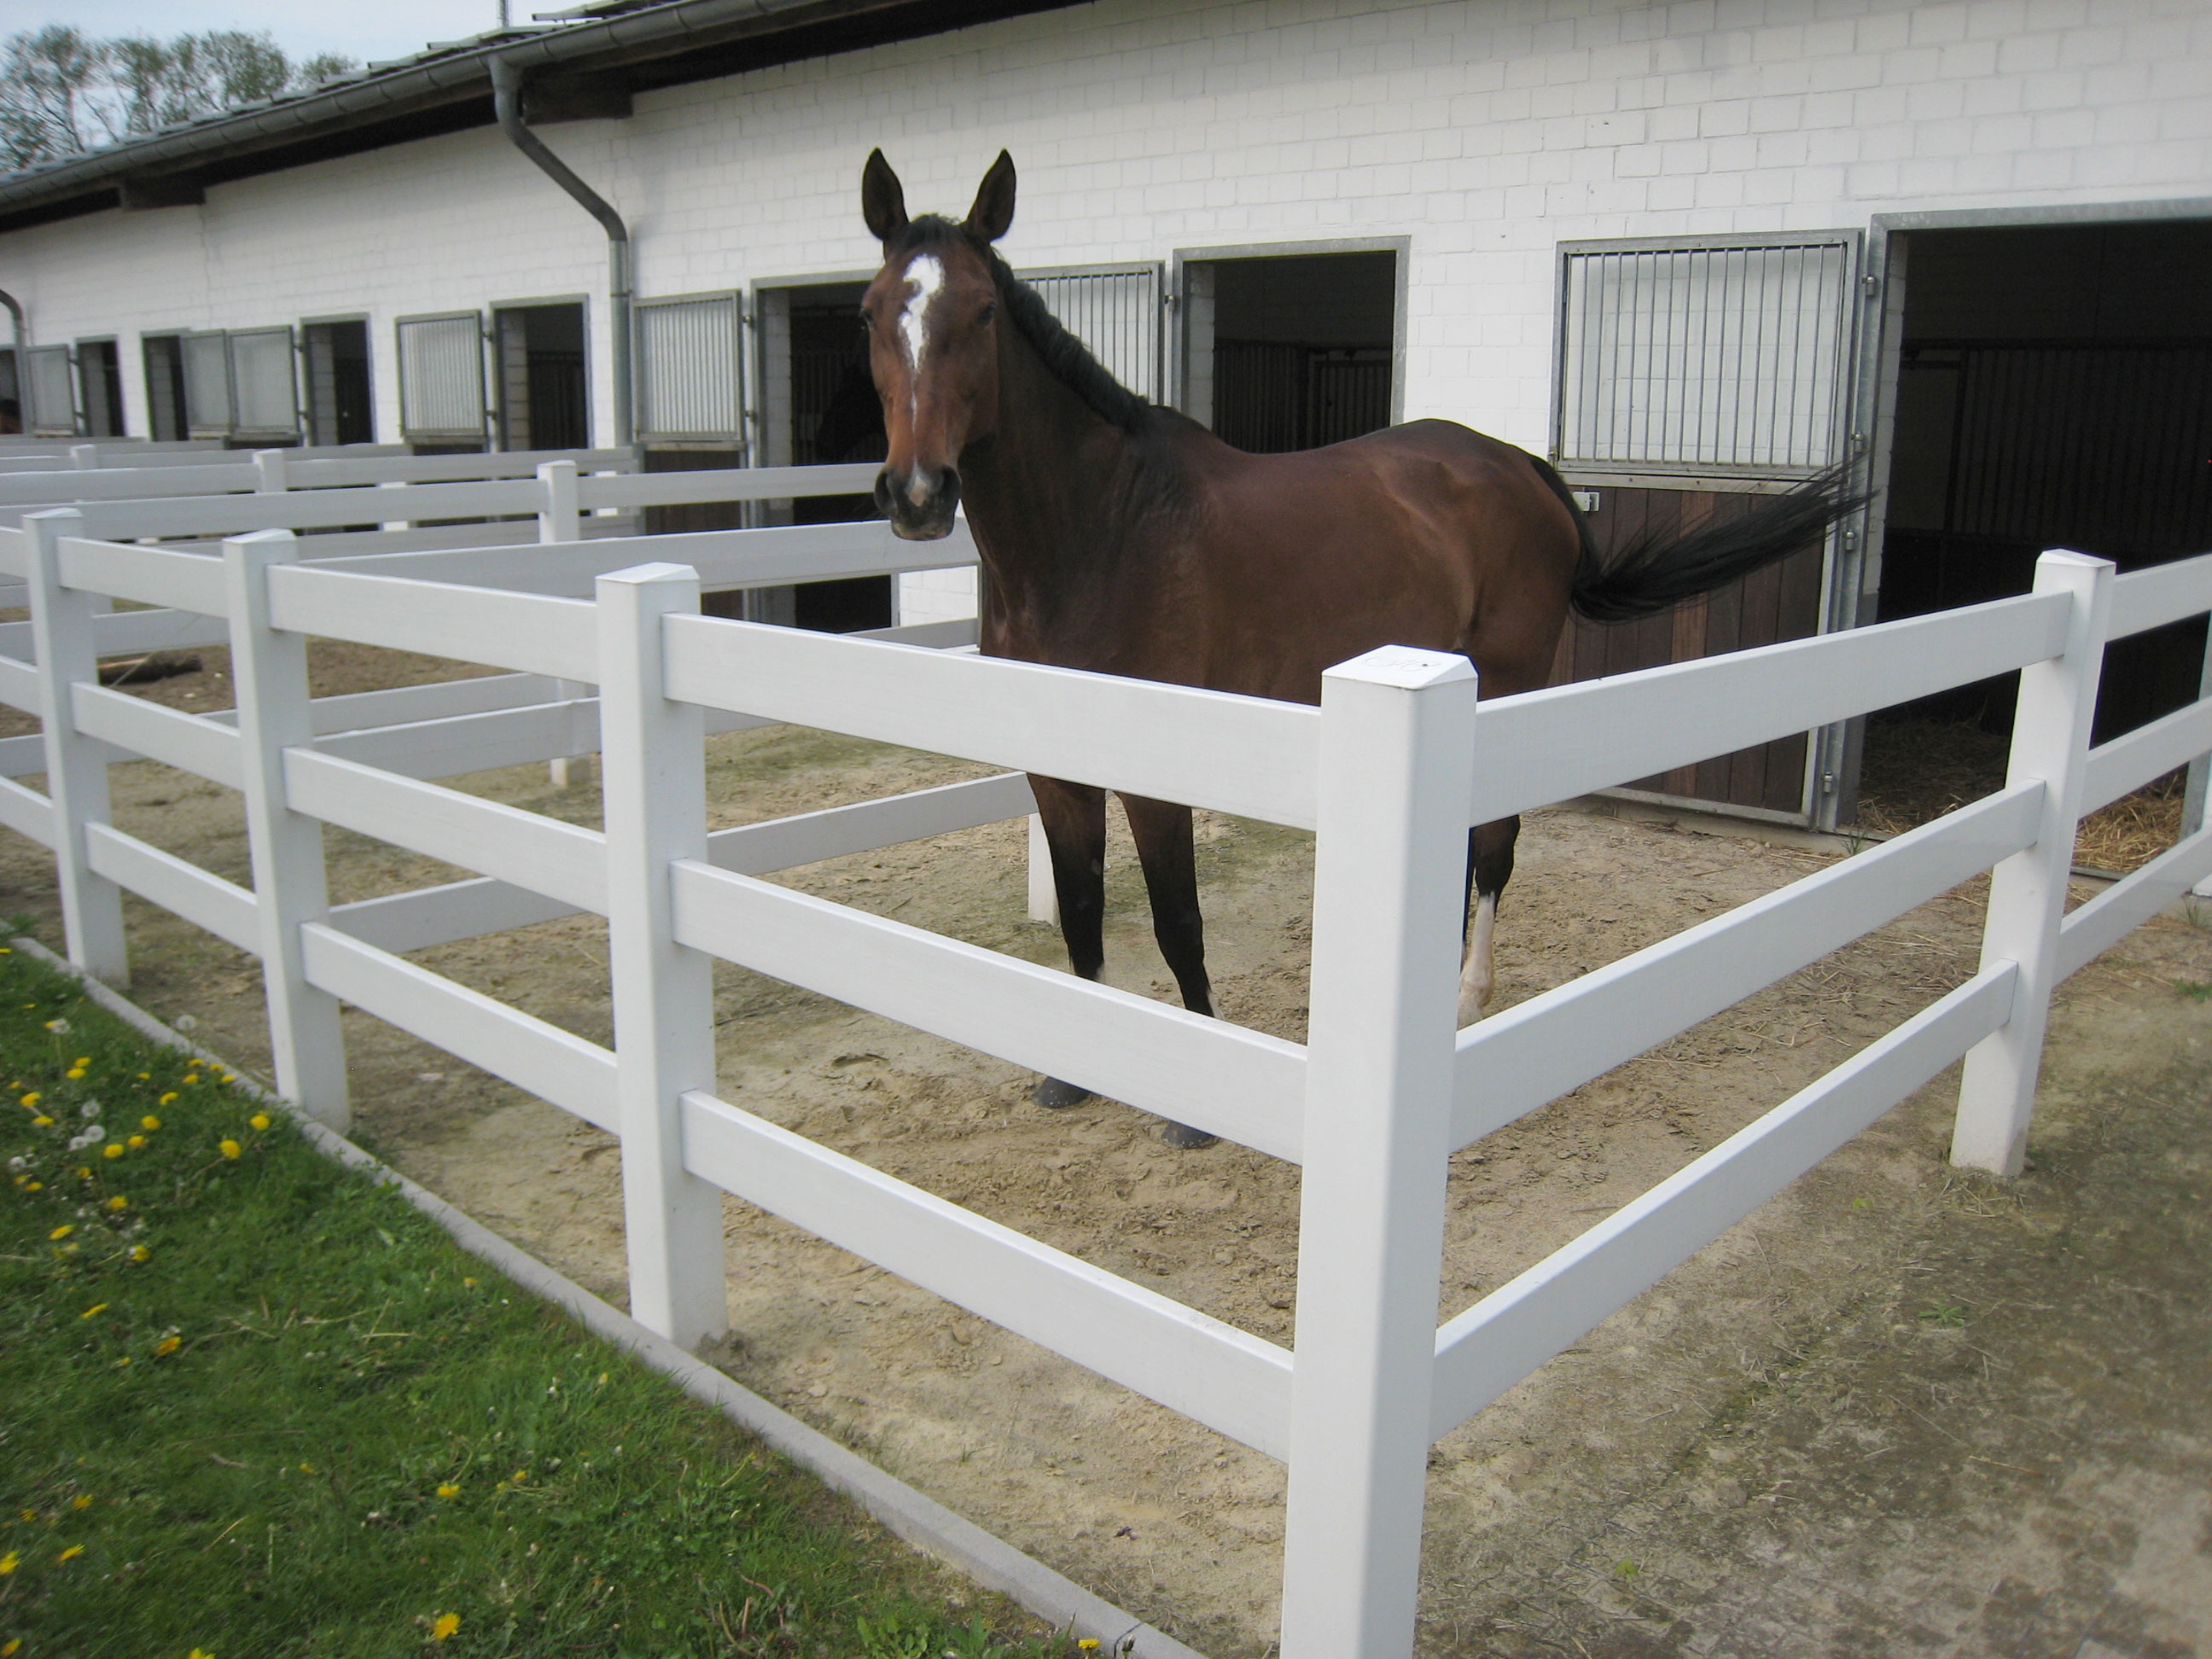 En brun hest står i dens egen lille indhegning i forbindelse med dens stald. Indhegningen består af et hestehegn i hvid plast.